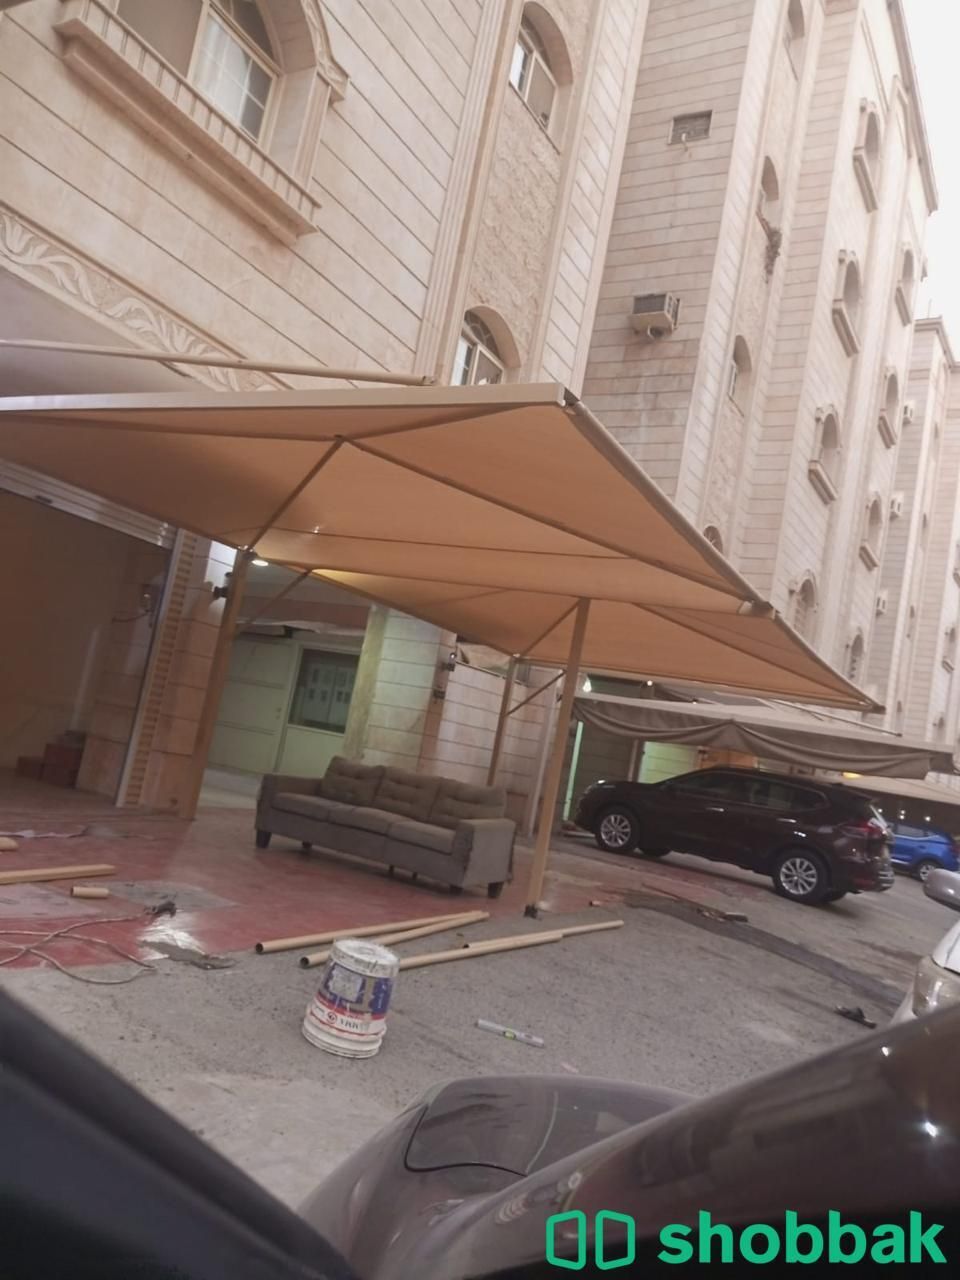 ظل ومظلات سيارات  Shobbak Saudi Arabia